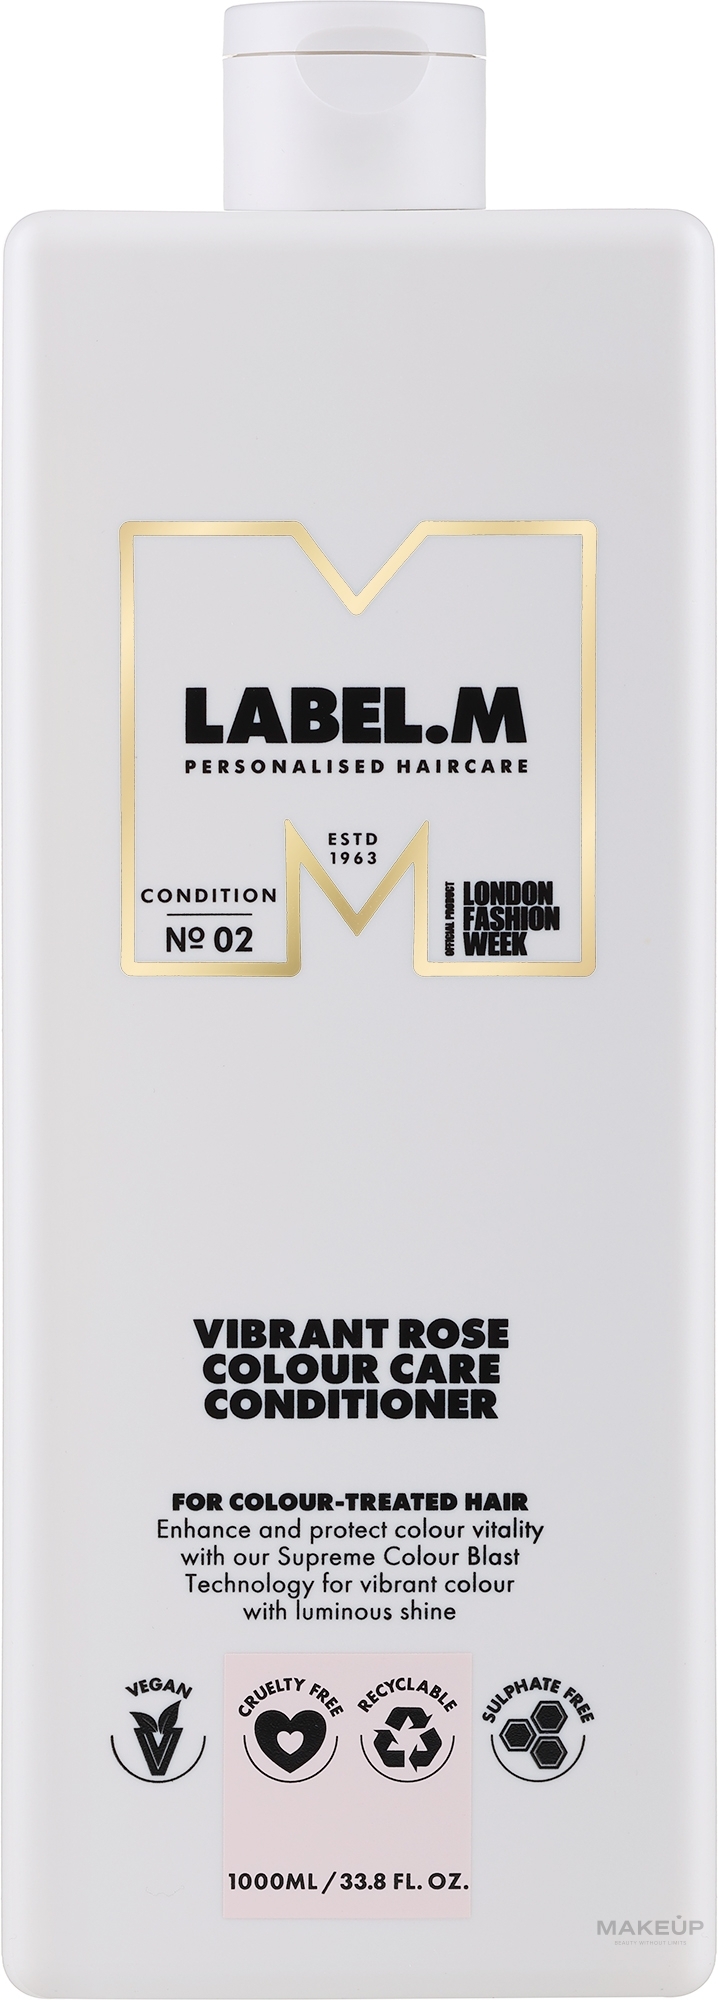 Живильний кондиціонер для фарбованого волосся - Label.m Professional Vibrant Rose Colour Care Conditioner — фото 1000ml